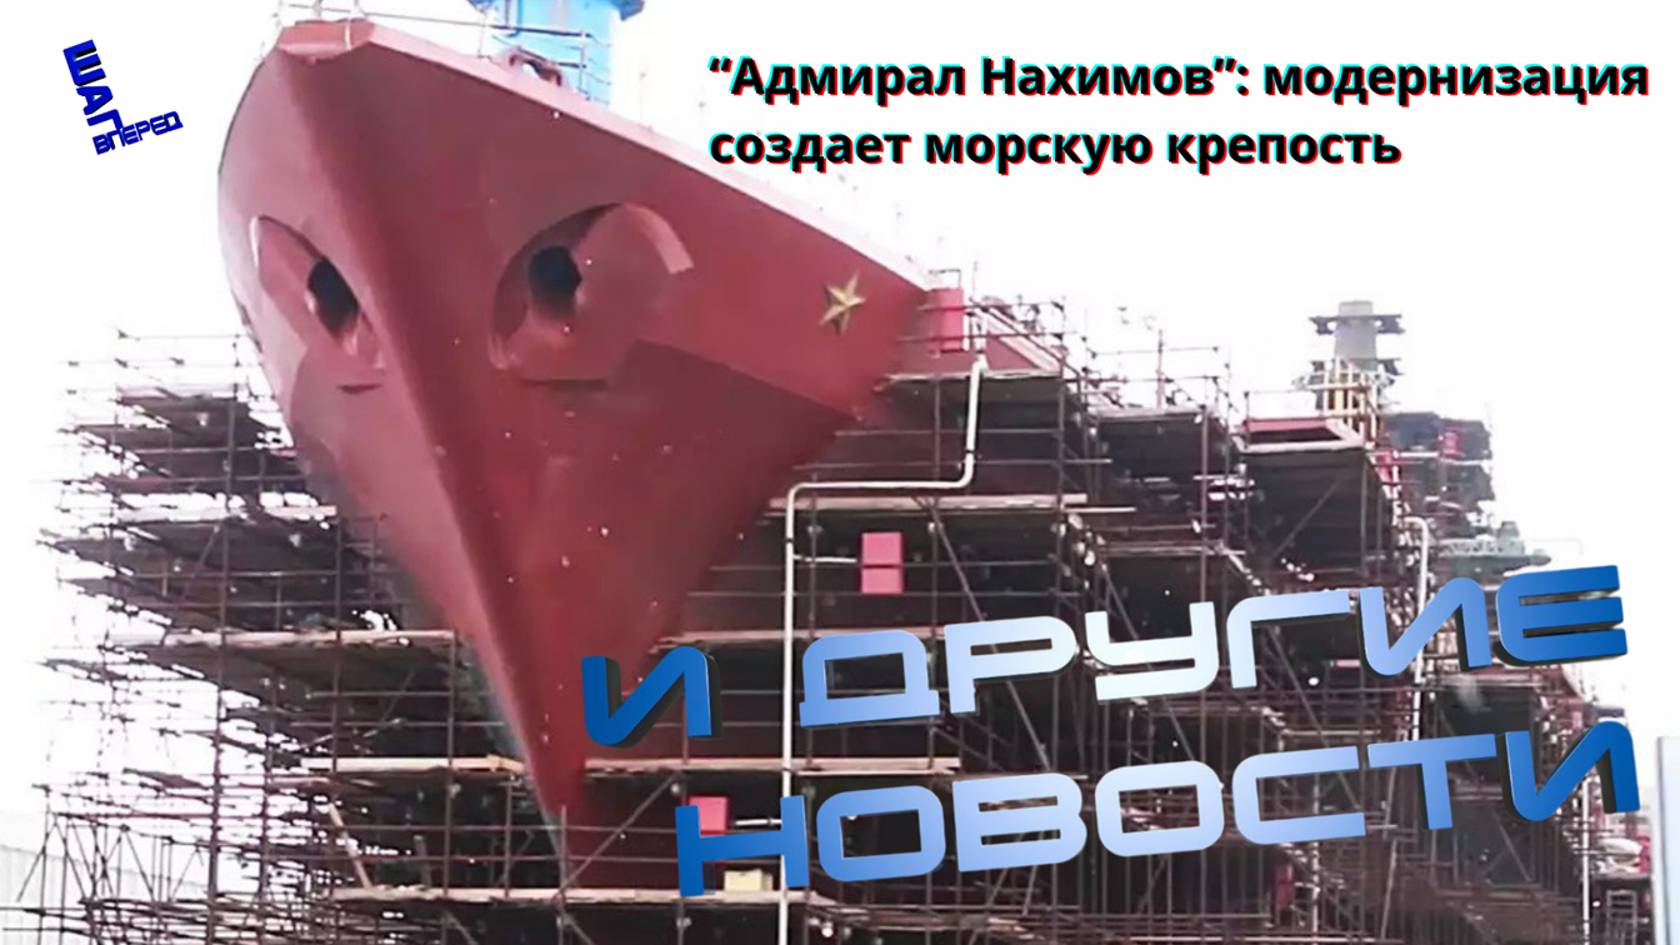 Перерождение морского монстра: "Адмирал Нахимов" возвращается беспрецедентно могущественным